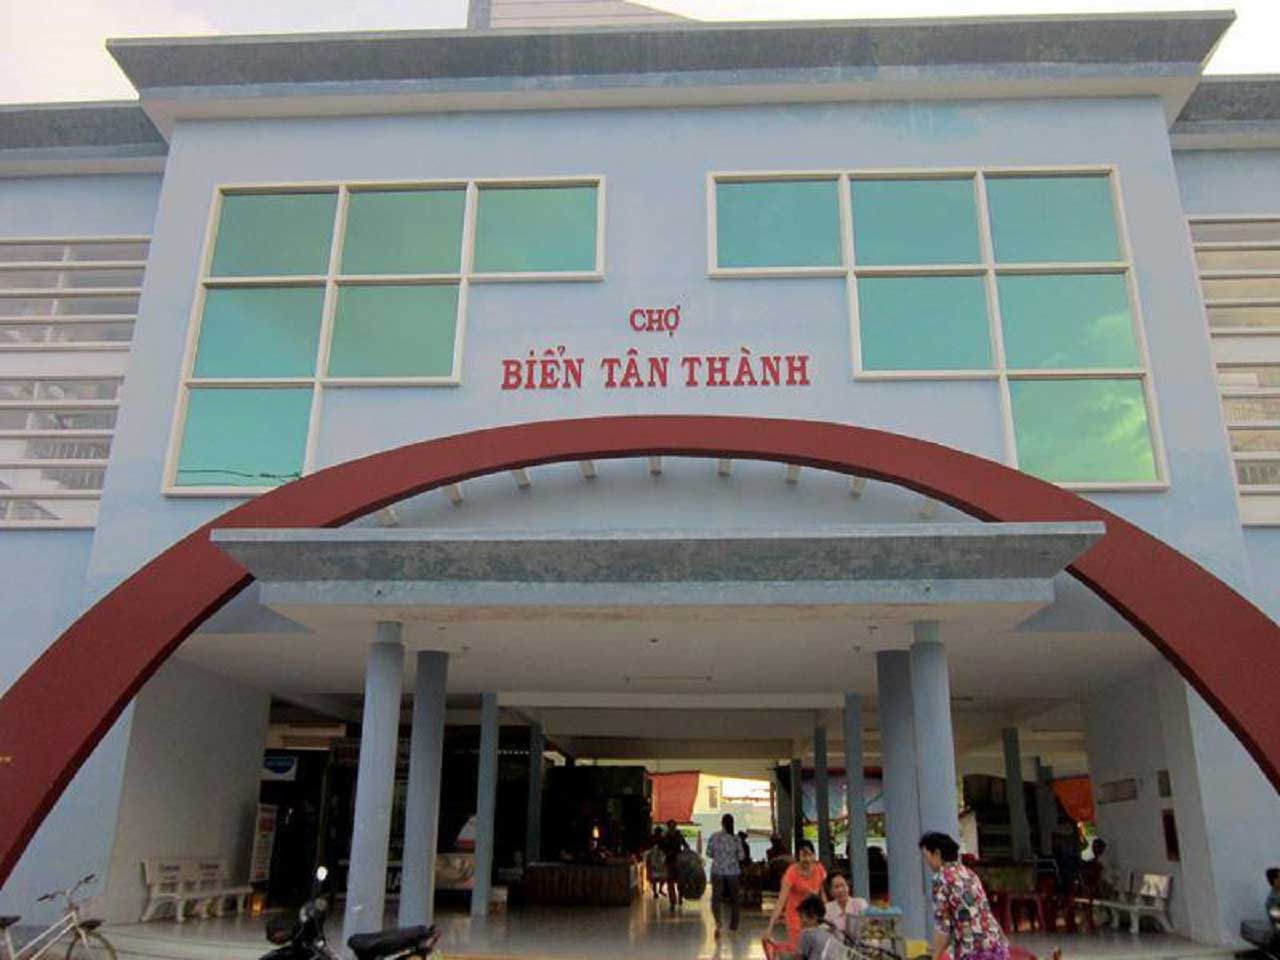 Chợ biển Tân Thành - Chợ hải sản lớn nhất Tiền Giang